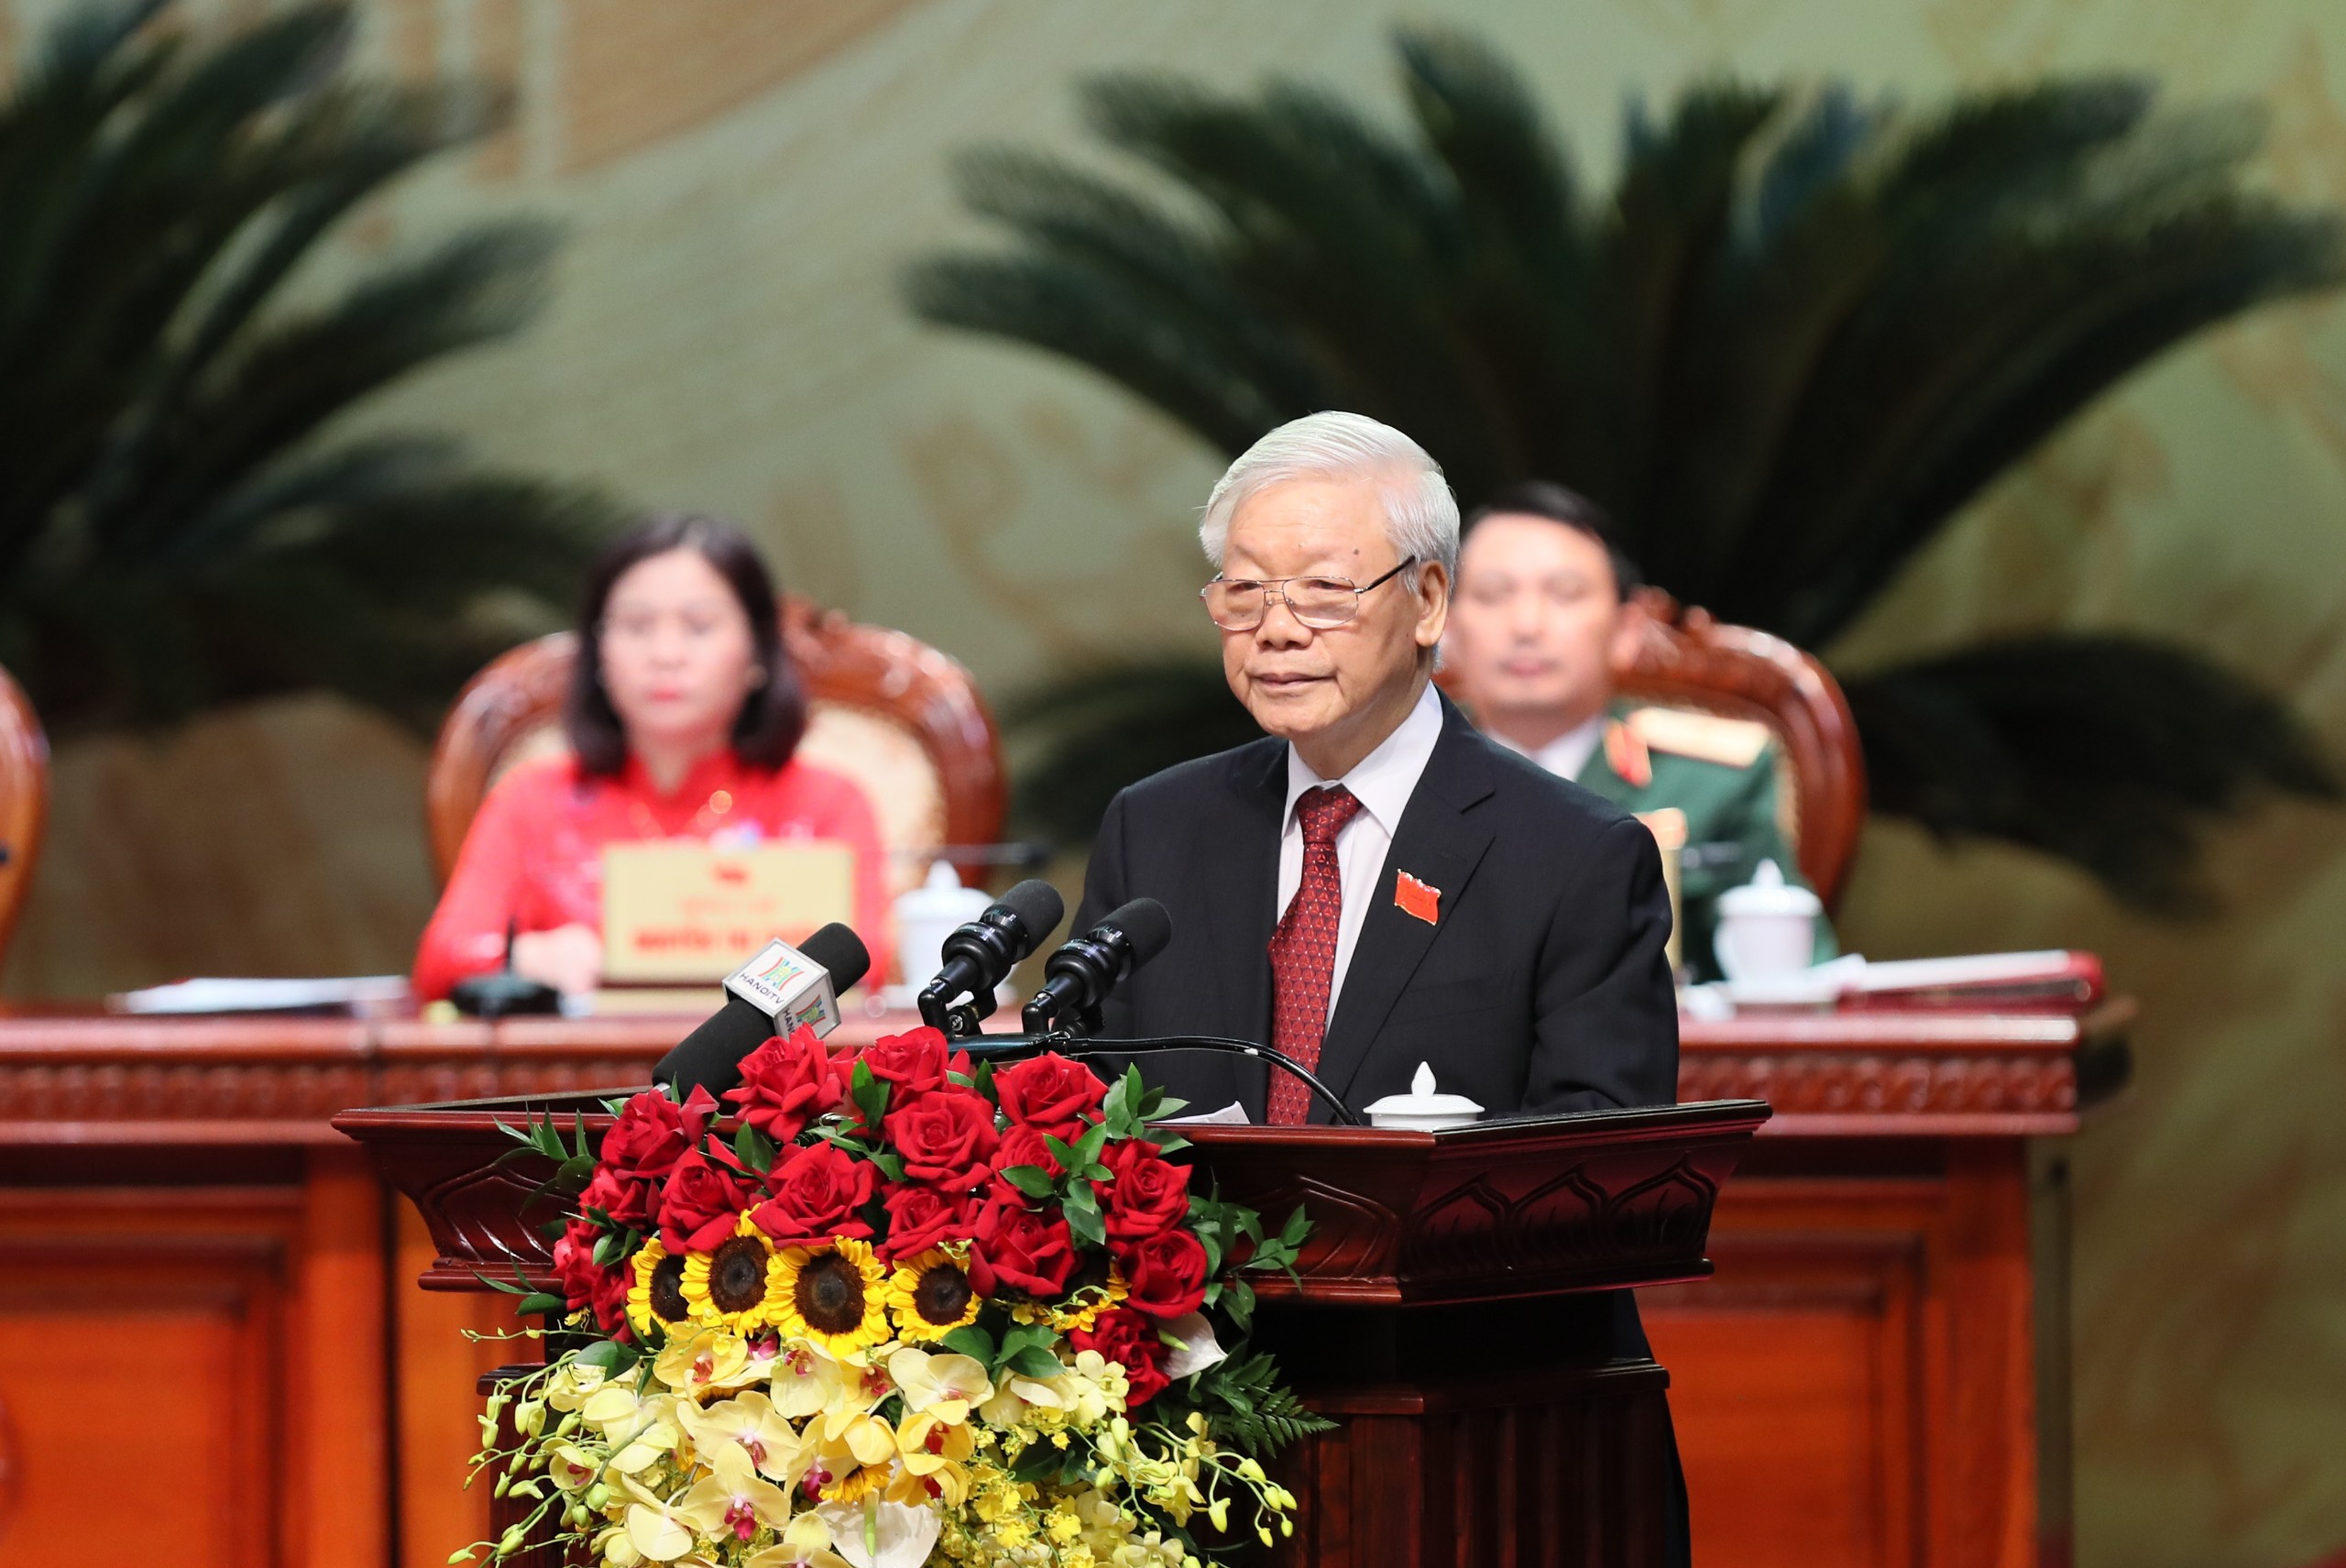 Tổng Bí thư, Chủ tịch nước Nguyễn Phú Trọng: Đảng bộ Hà Nội phải nhìn xa hơn nữa